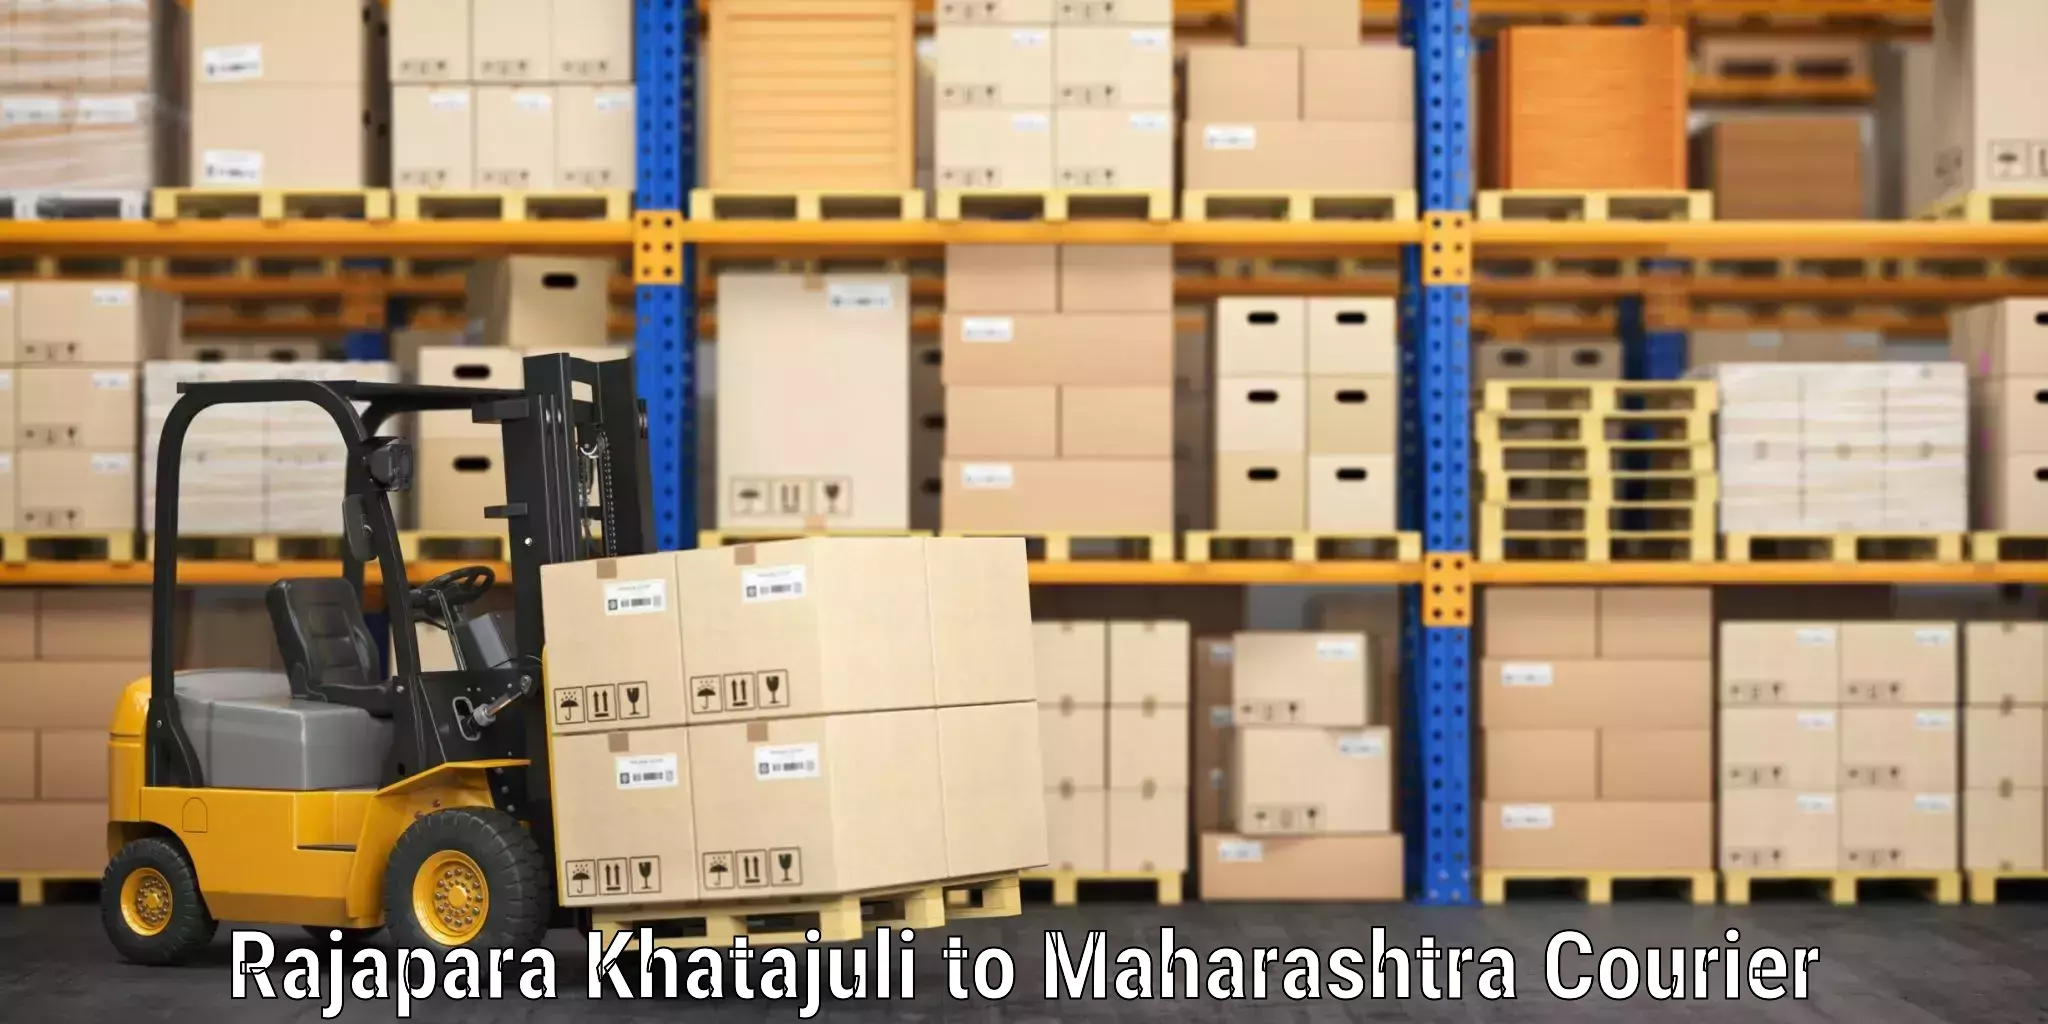 Automated luggage transport Rajapara Khatajuli to Raigarh Maharashtra